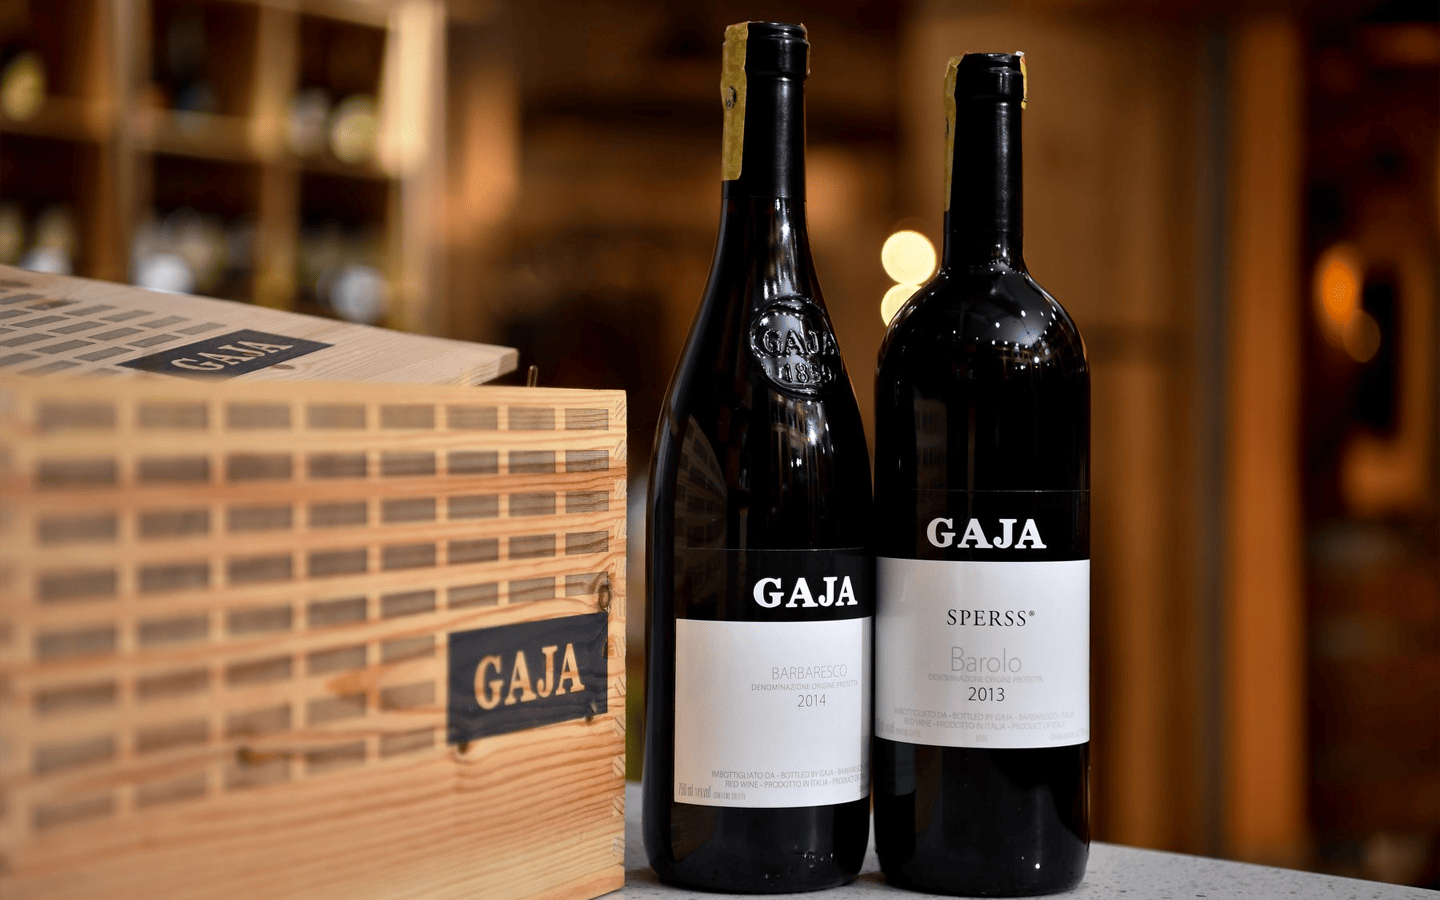 gaja wine